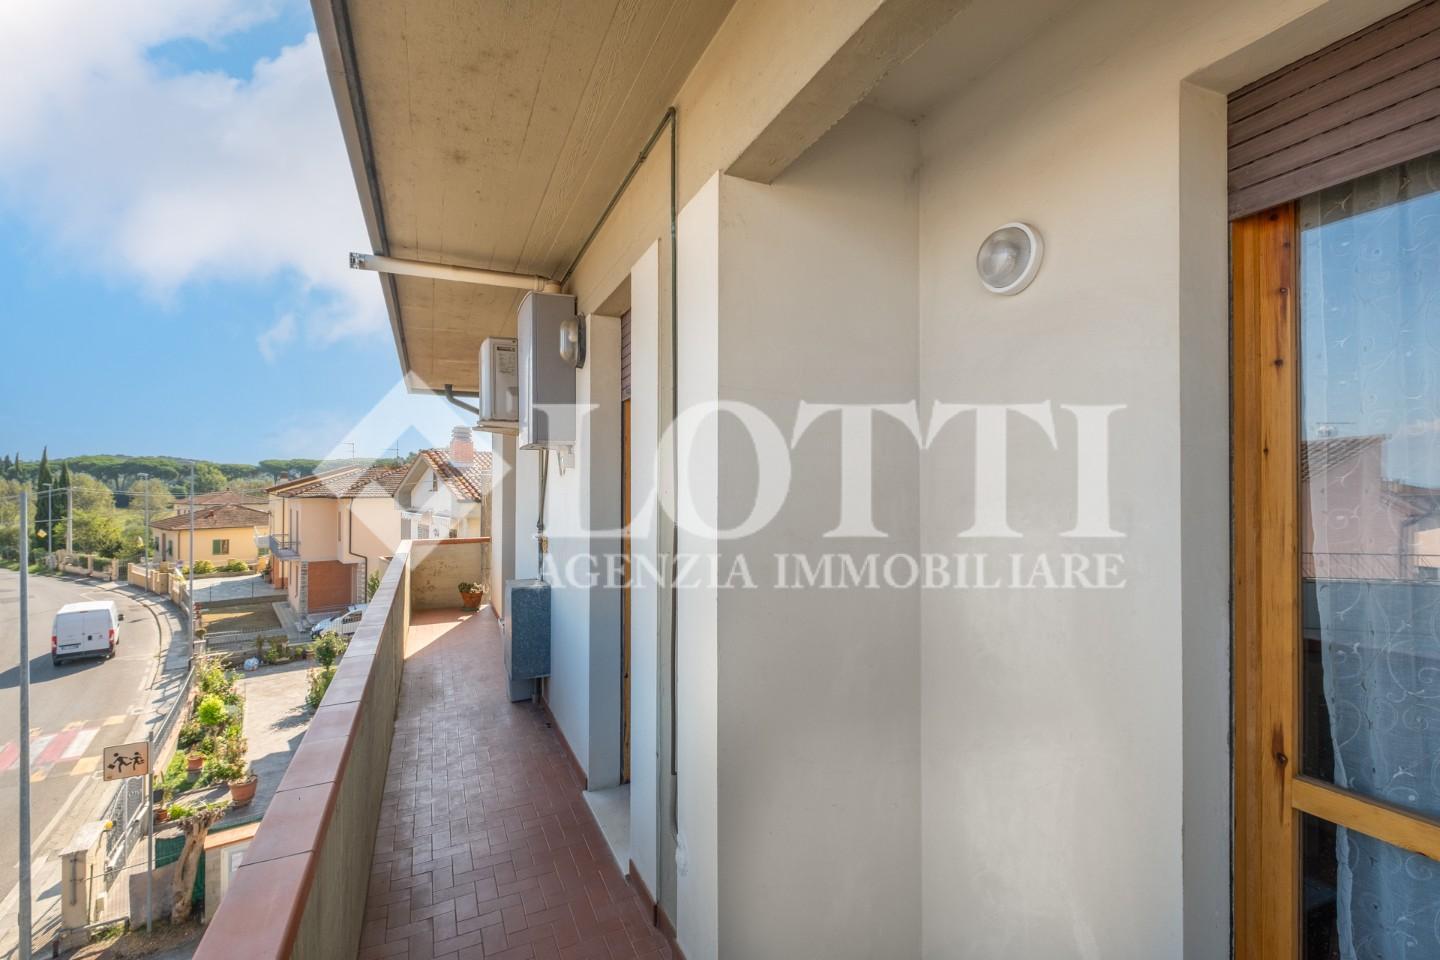 Apartment for sale in Perignano, Casciana Terme Lari (PI)